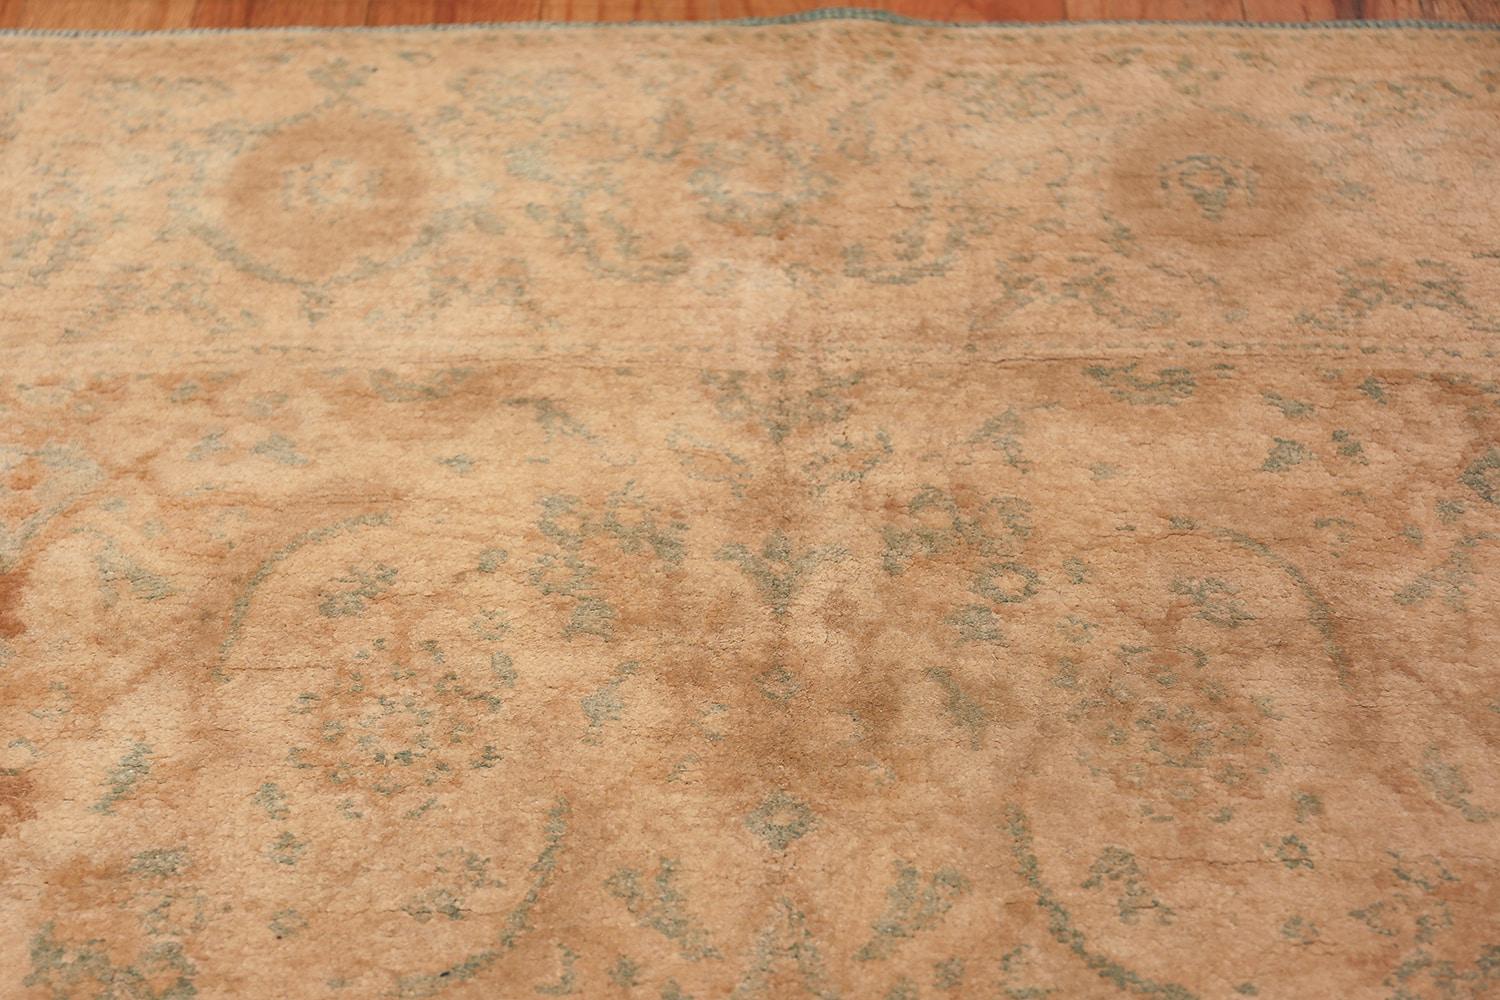 Schöne Elfenbein Hintergrund antike indische Baumwolle Agra Teppich, Herkunftsland: Indien, Circa Datum: 1900. Größe: 5 ft x 8 ft 6 in (1,52 m x 2,59 m)

